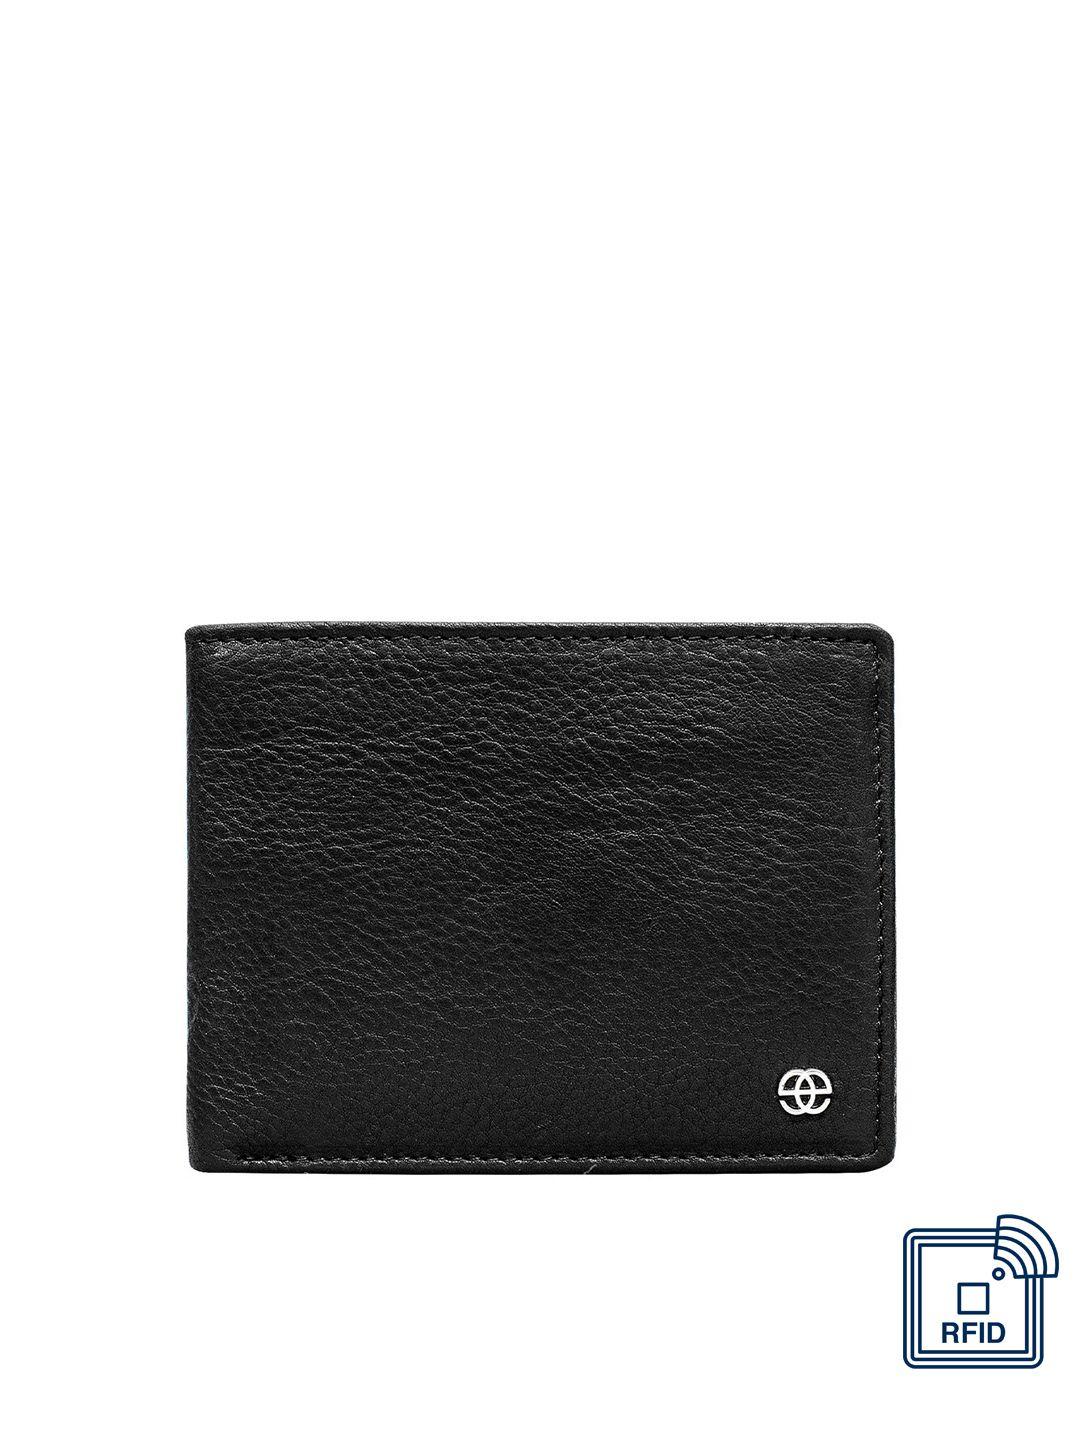 eske men black leather two fold wallet